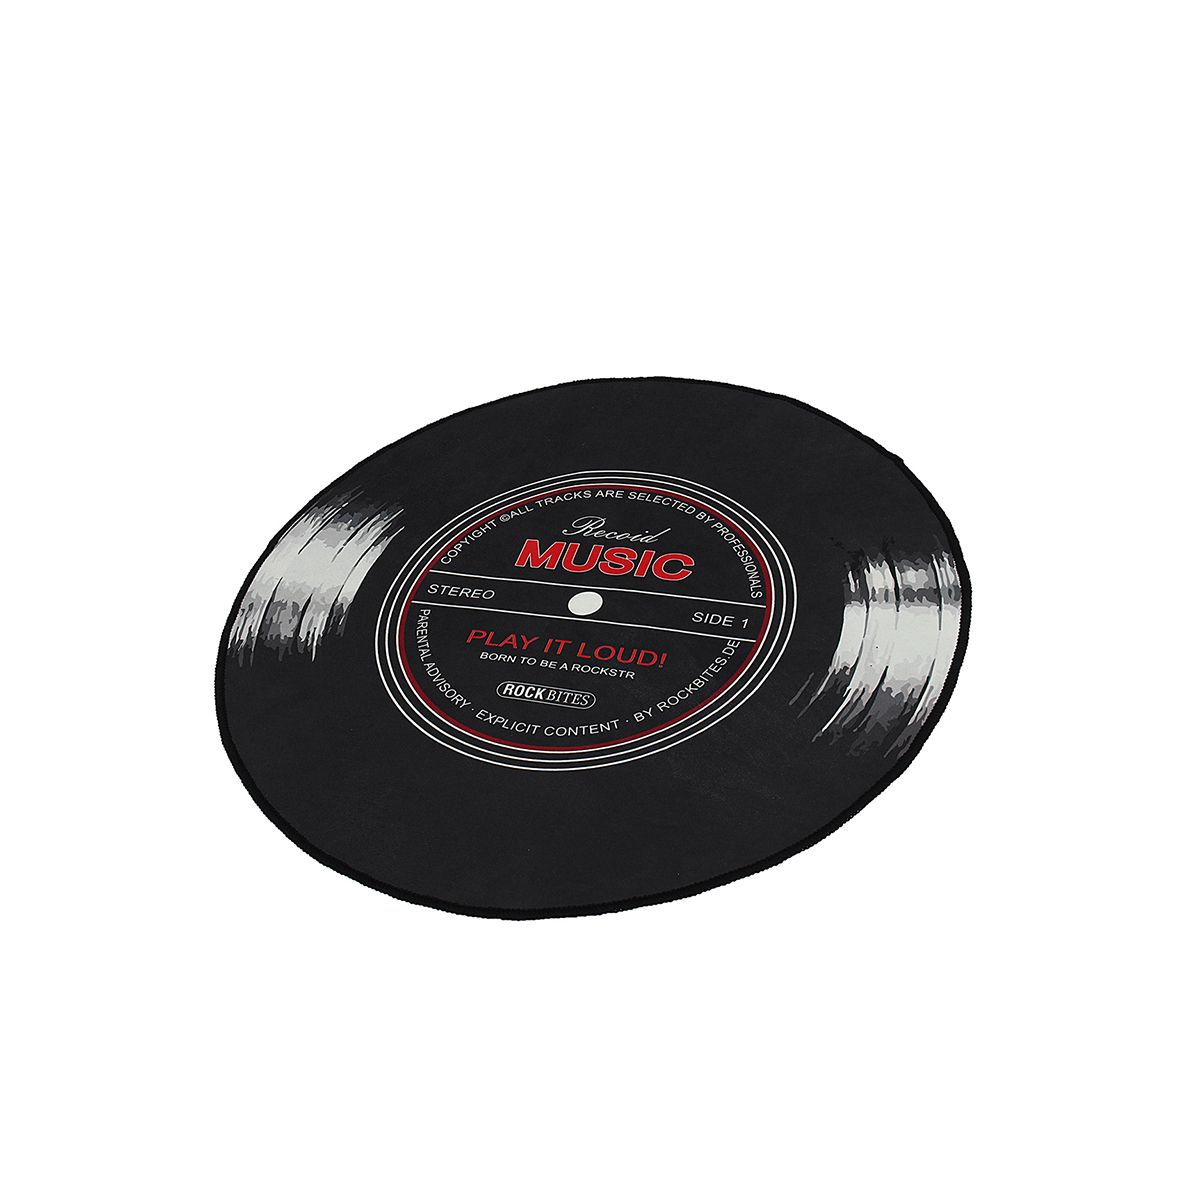 60-120cm-Retro-Music-CD-Record-Printed-Soft-Round-Floor-Mat-Room-Area-Carpet-Rug-1557780